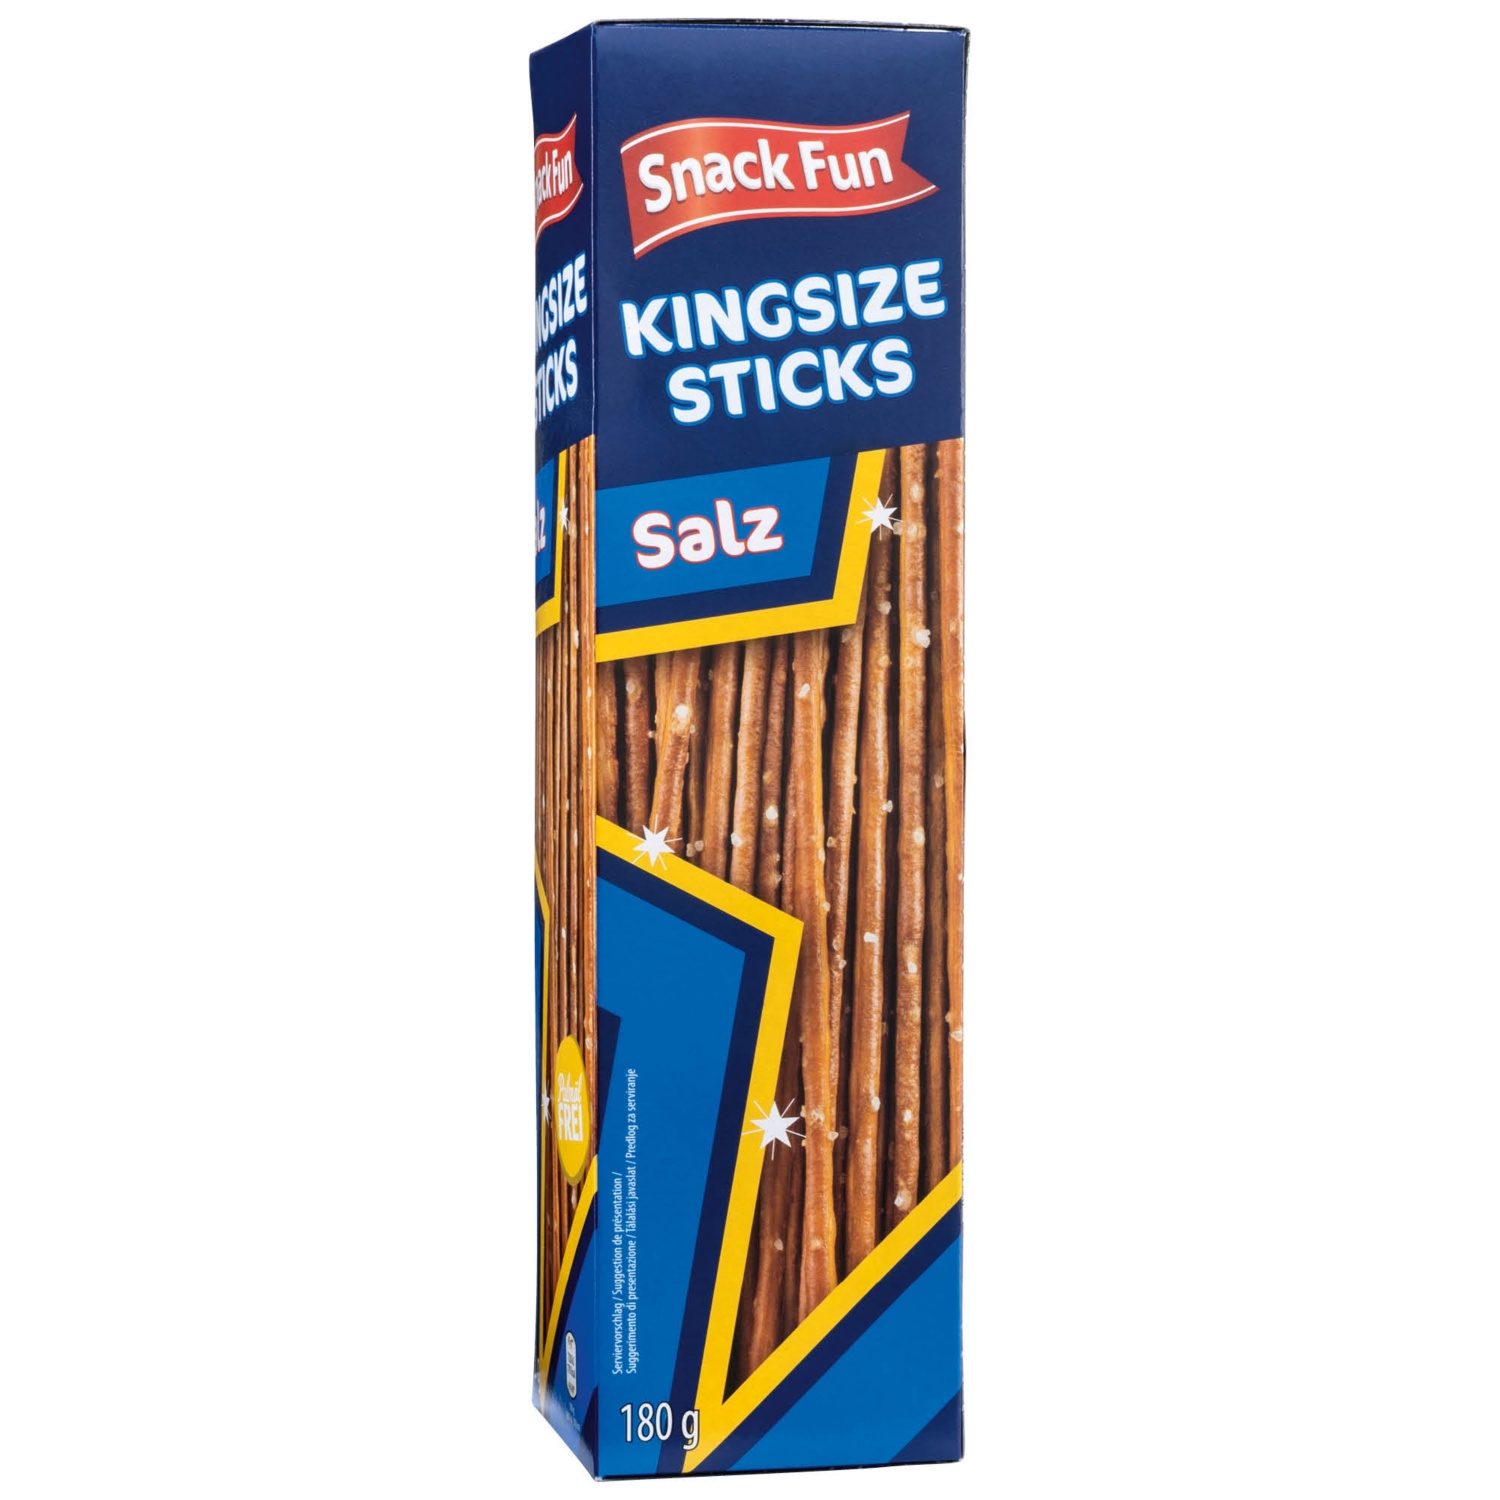 SNACK FUN Kingsize Sticks, sale